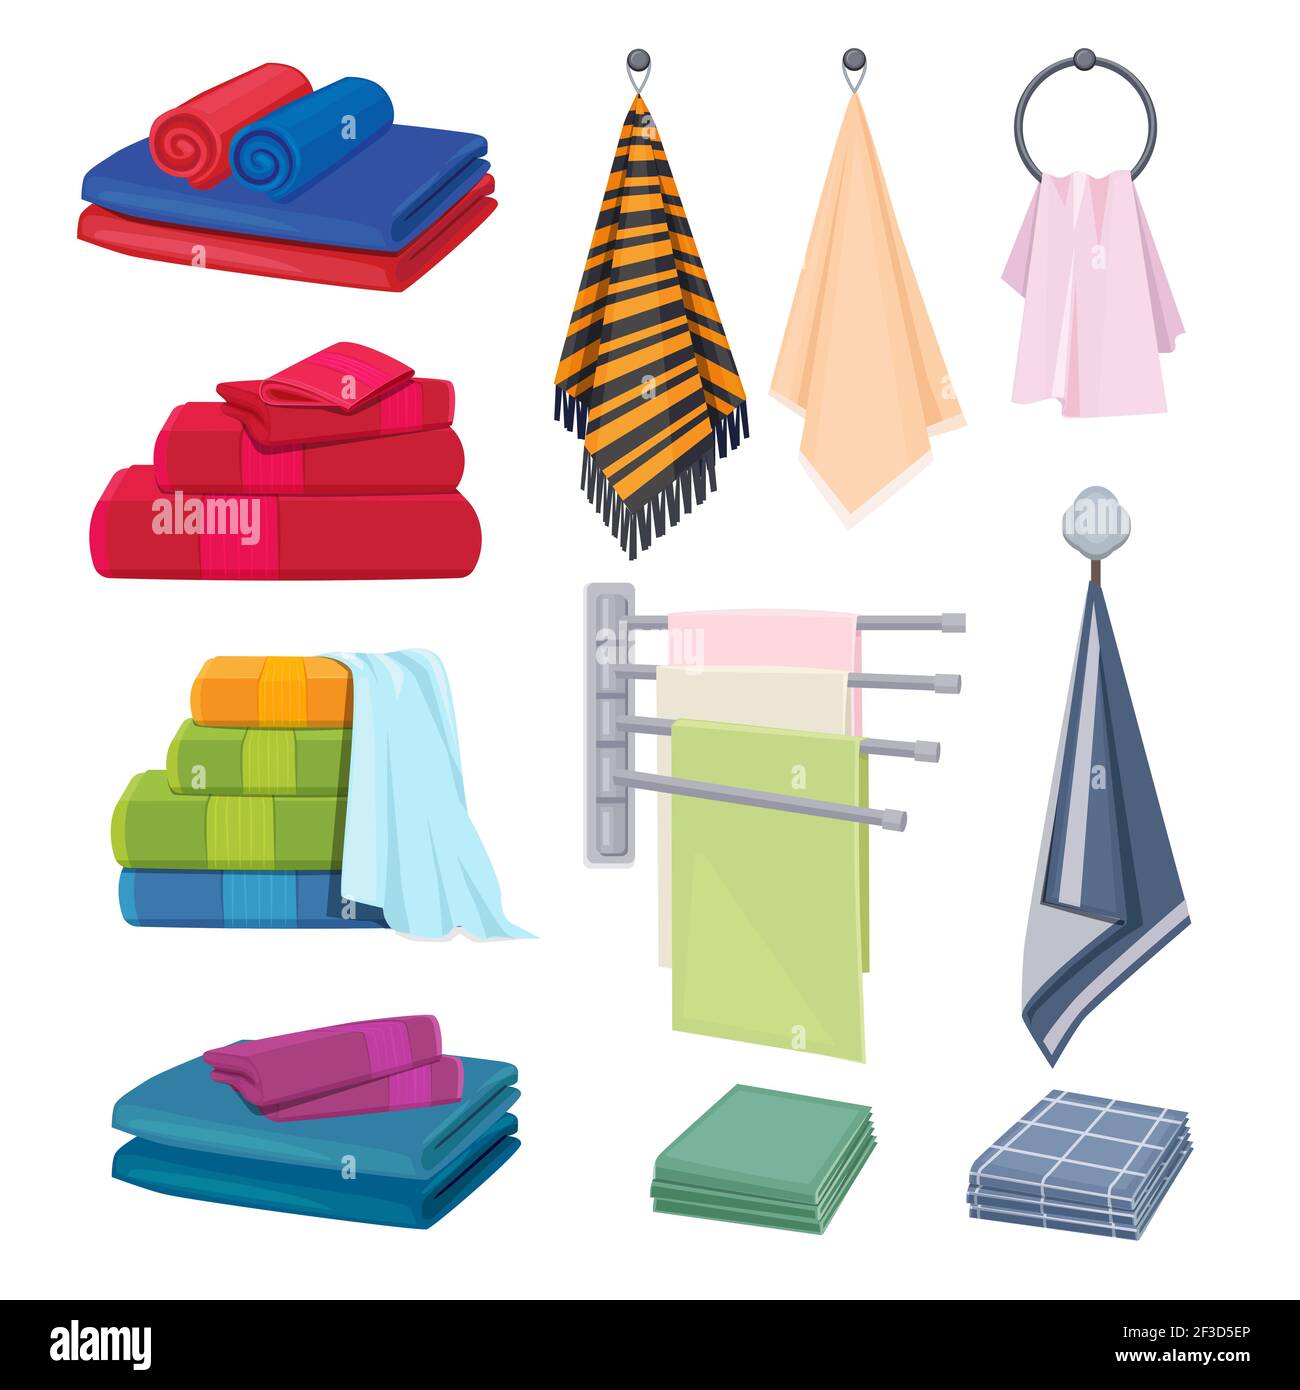 Küchentischtücher. Textil Baumwolle Stoffe farbige Decke Handtücher Hygiene Elemente Vektor Cartoon Kollektion Stock Vektor